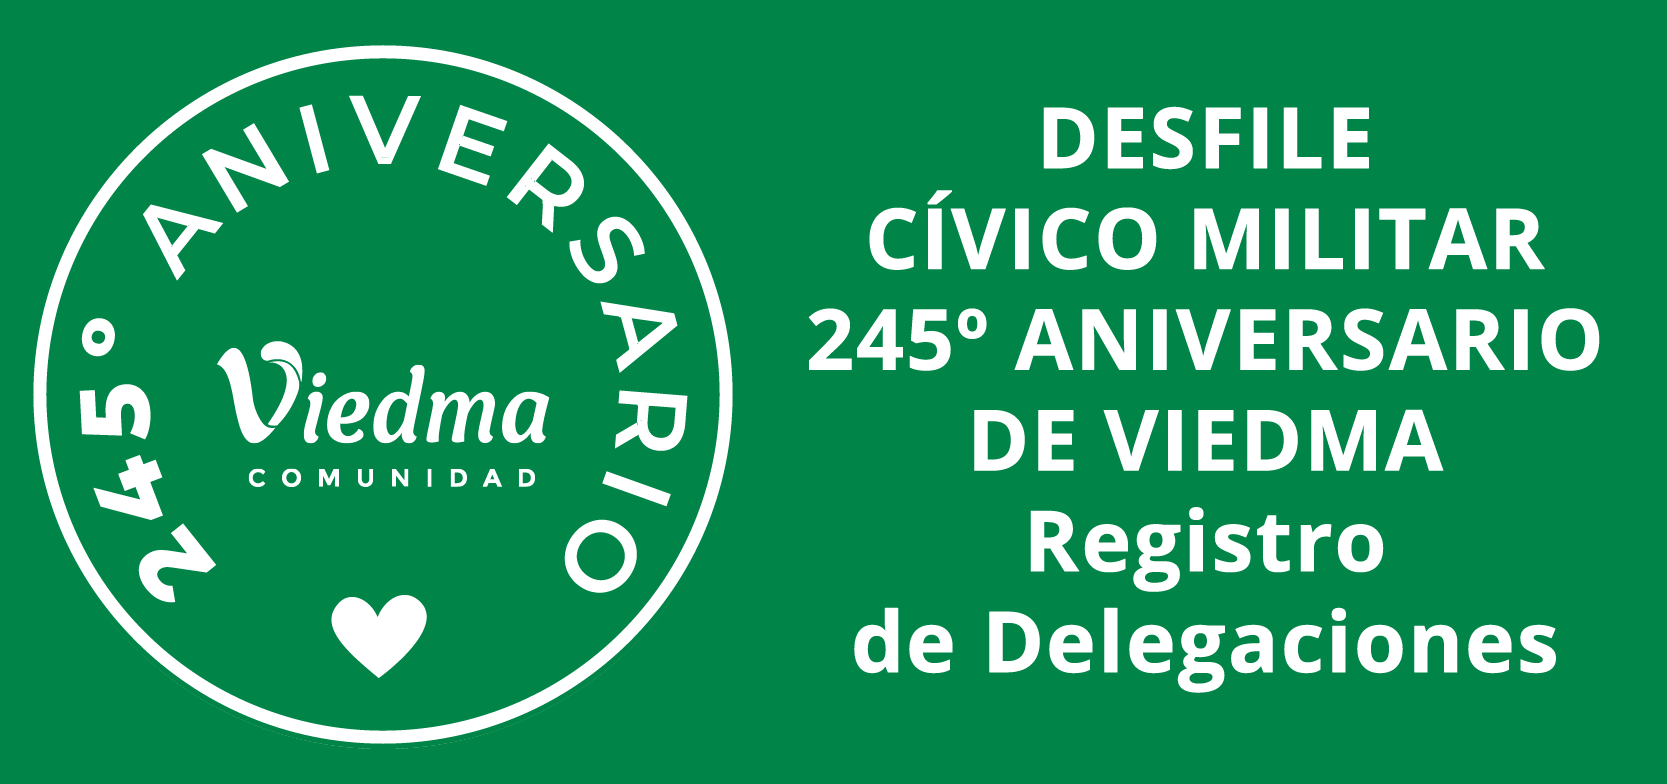 DESFILE CÍVICO MILITAR - 245º ANIVERSARIO DE VIEDMA - Registro de Delegaciones